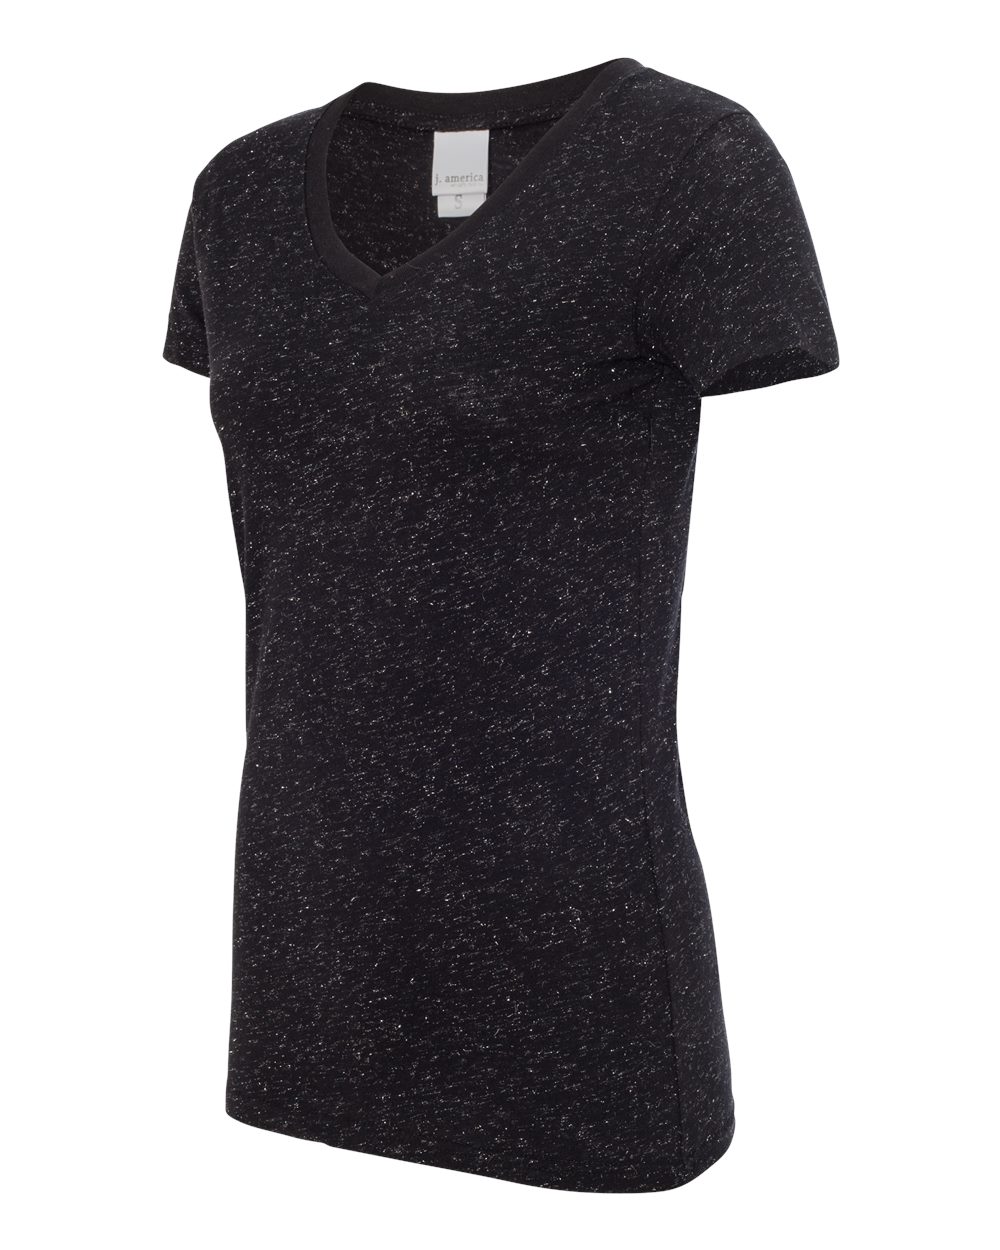 J. America 8136 - Women's Glitter V-Neck T-Shirt